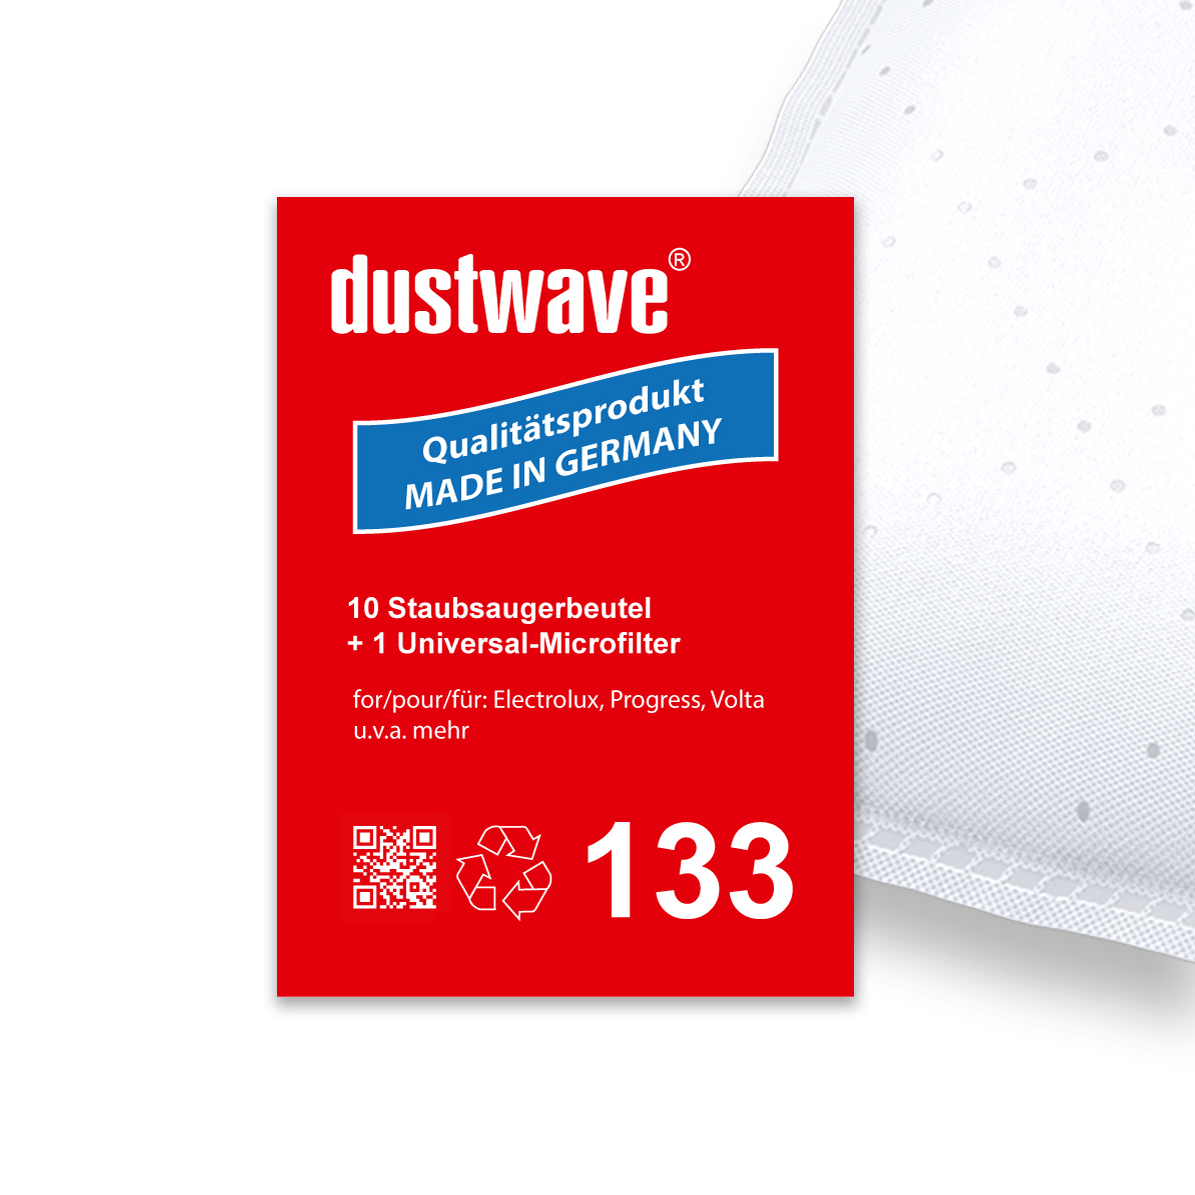 Dustwave® 10 Staubsaugerbeutel für Base BA 1201 - hocheffizient, mehrlagiges Mikrovlies mit Hygieneverschluss - Made in Germany